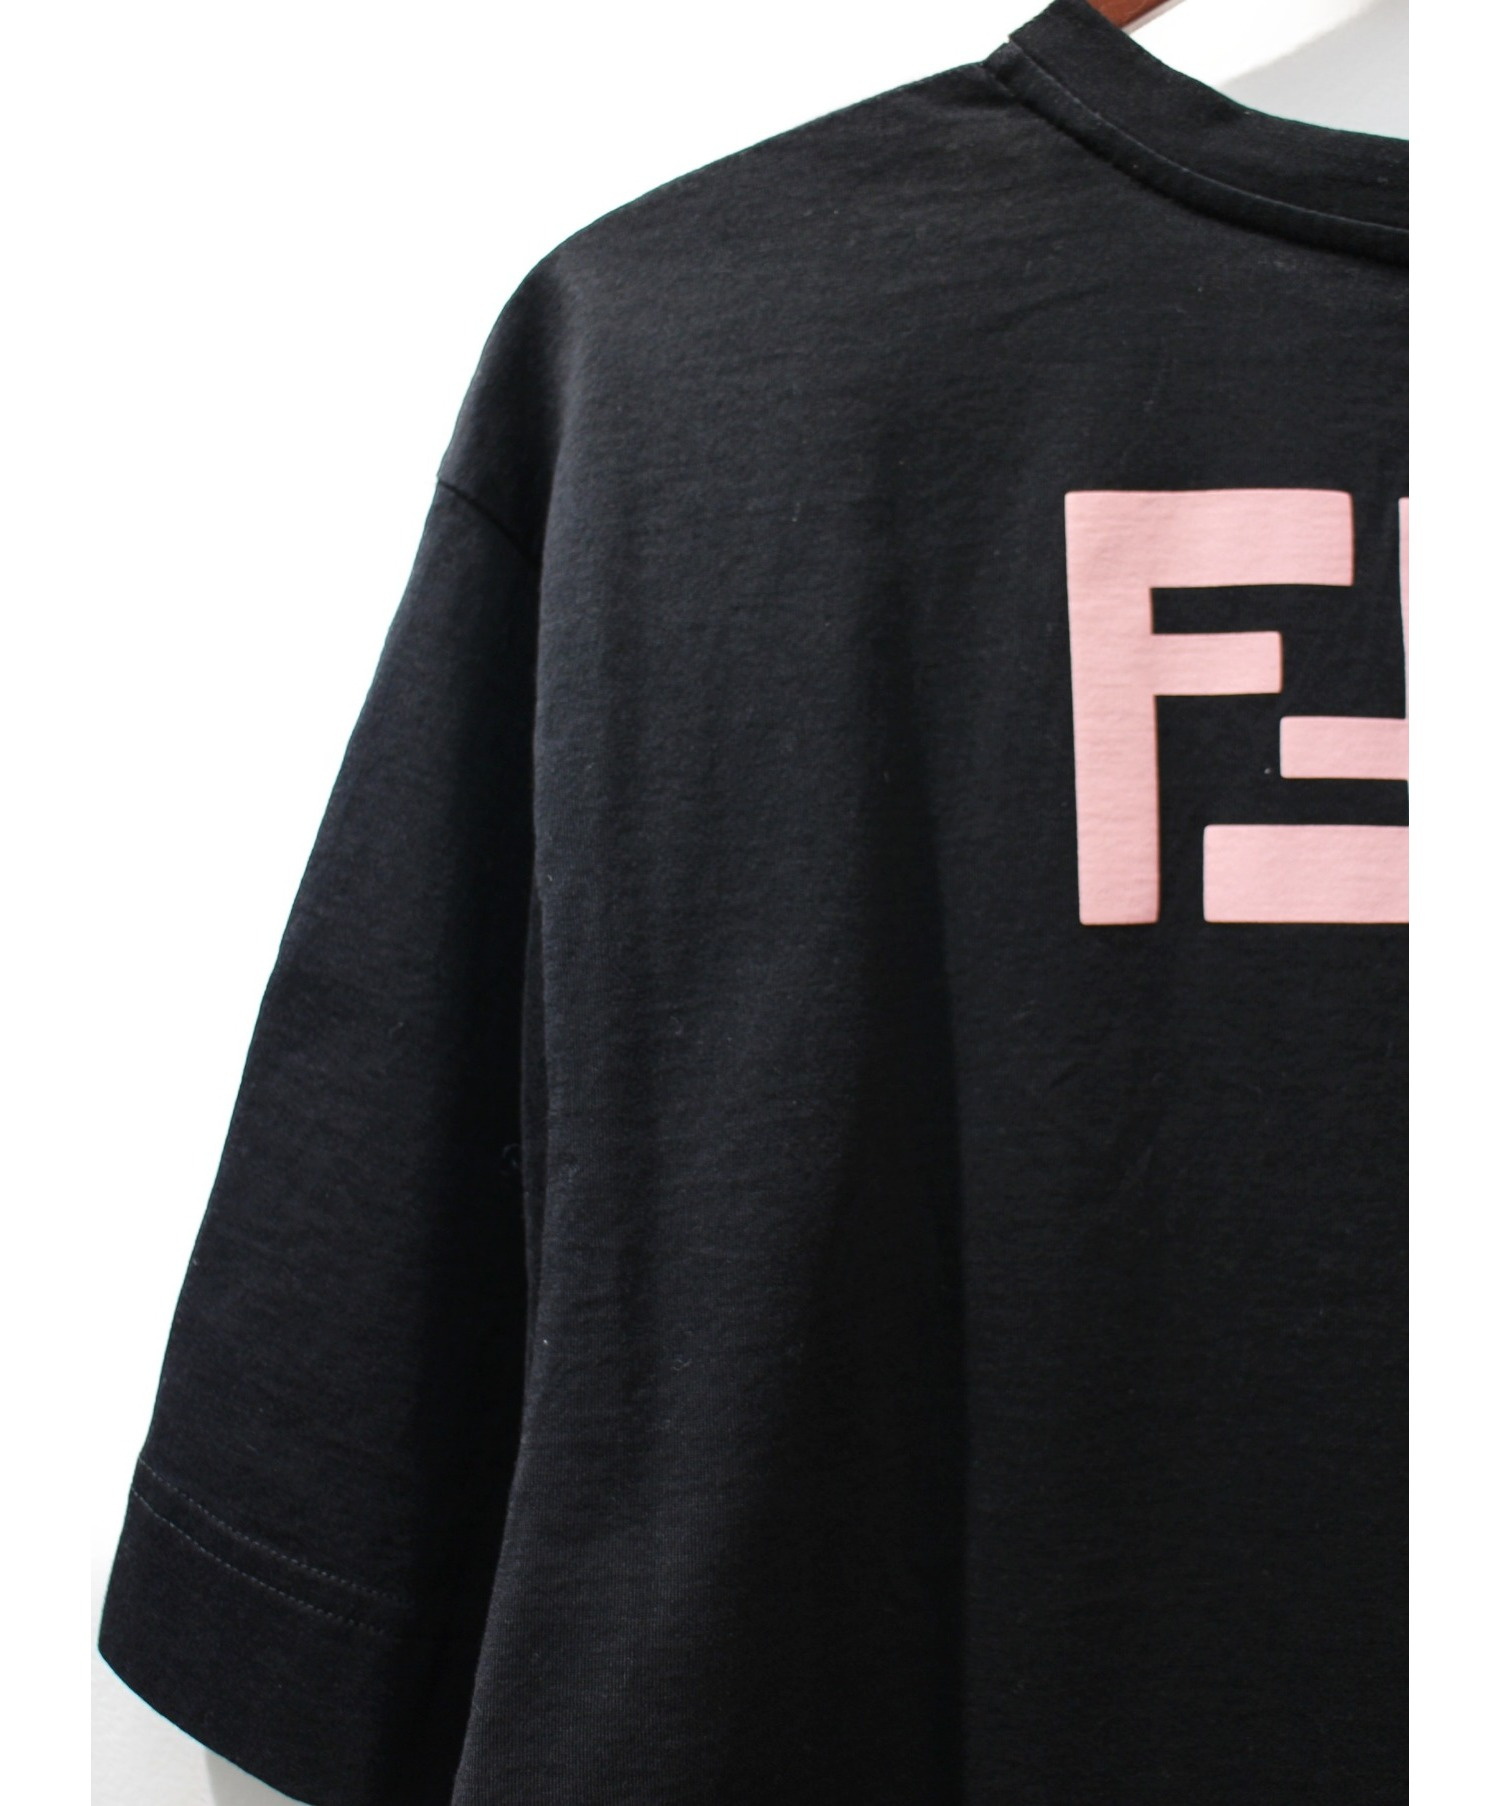 FENDI (フェンディ) バイカラーロゴTシャツ ホワイト×ブラック サイズ 